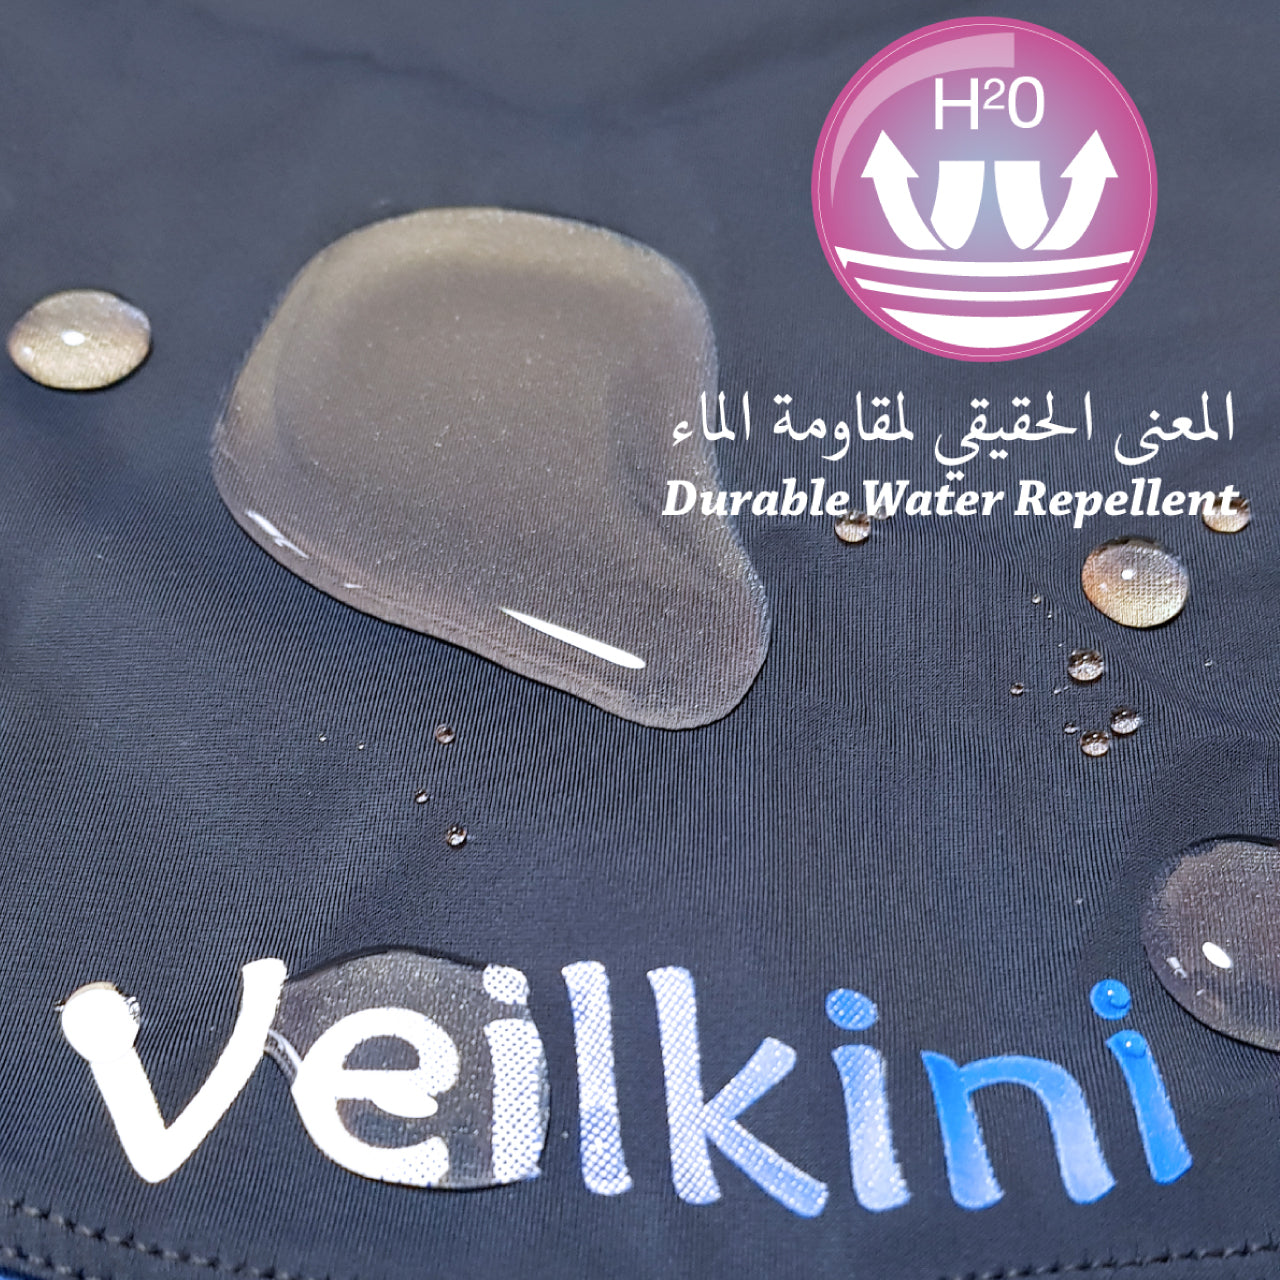 Veilkini Full Cover Swimsuit Sportive